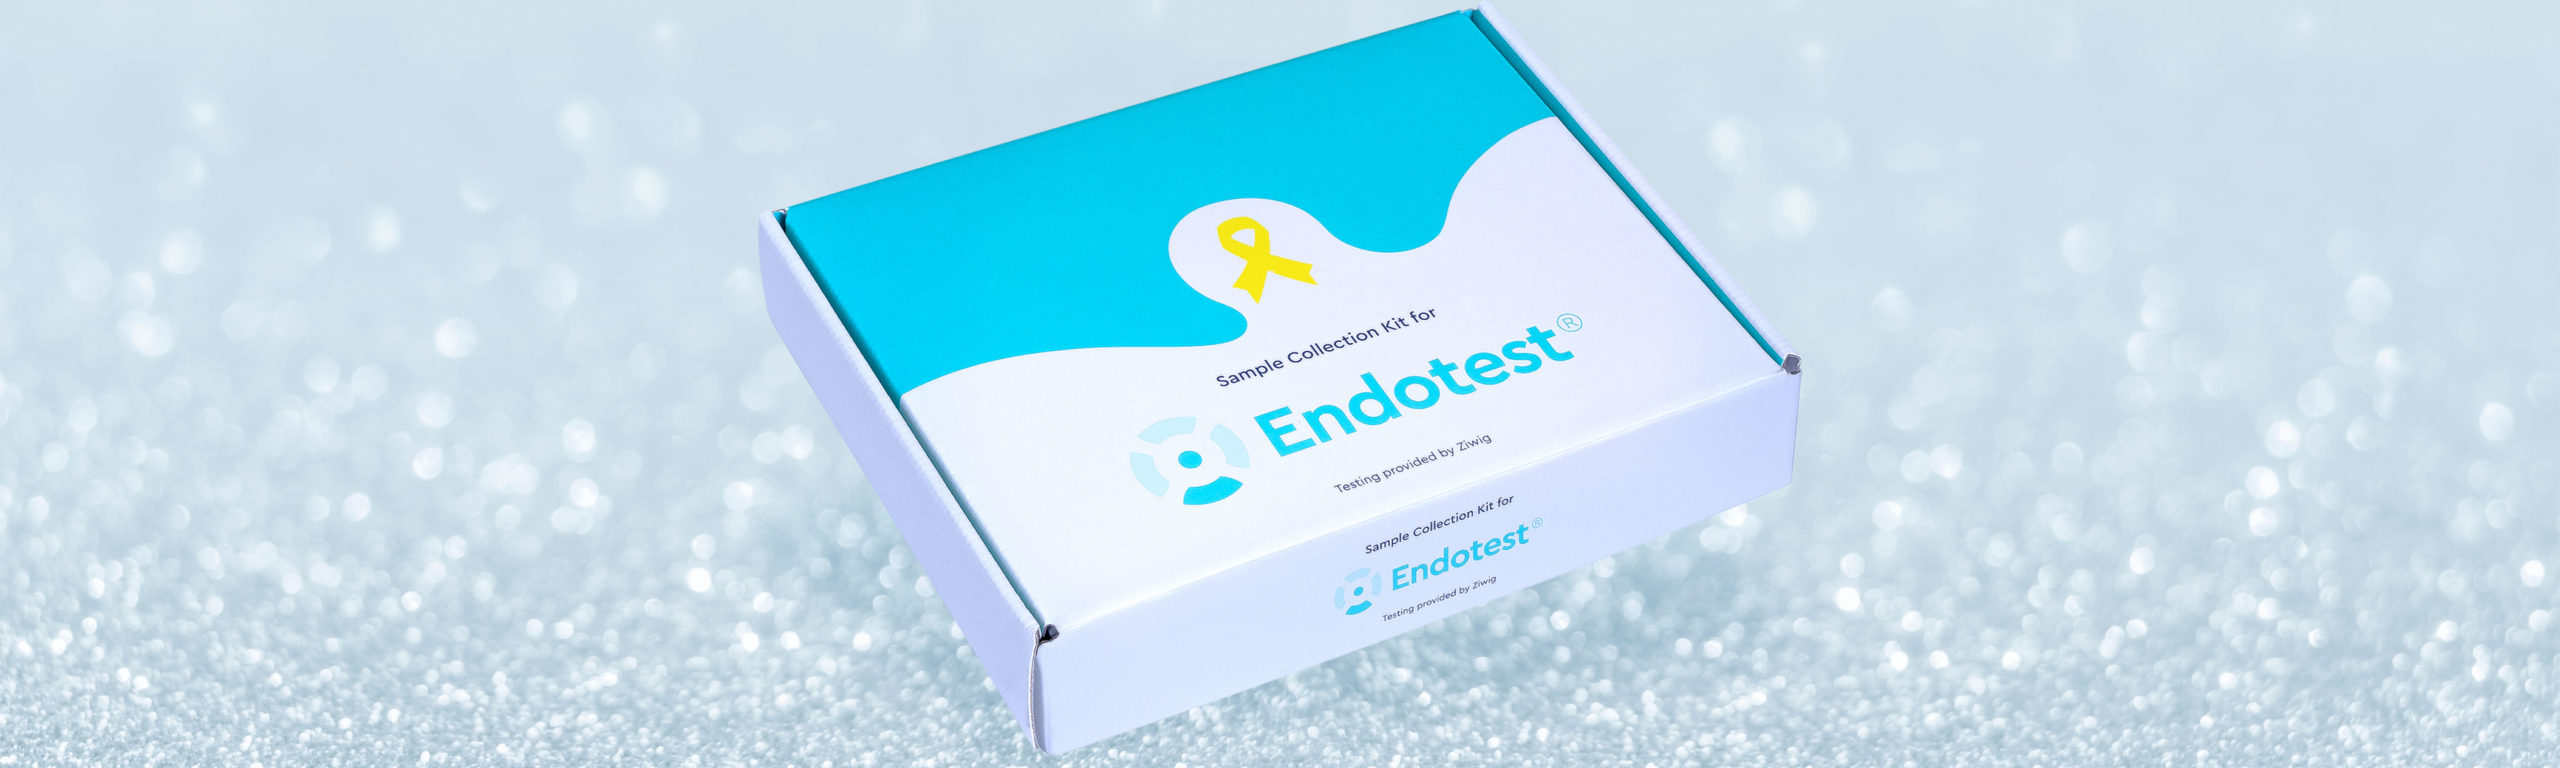 Testkitbox des Endometriose-Test Endotest®